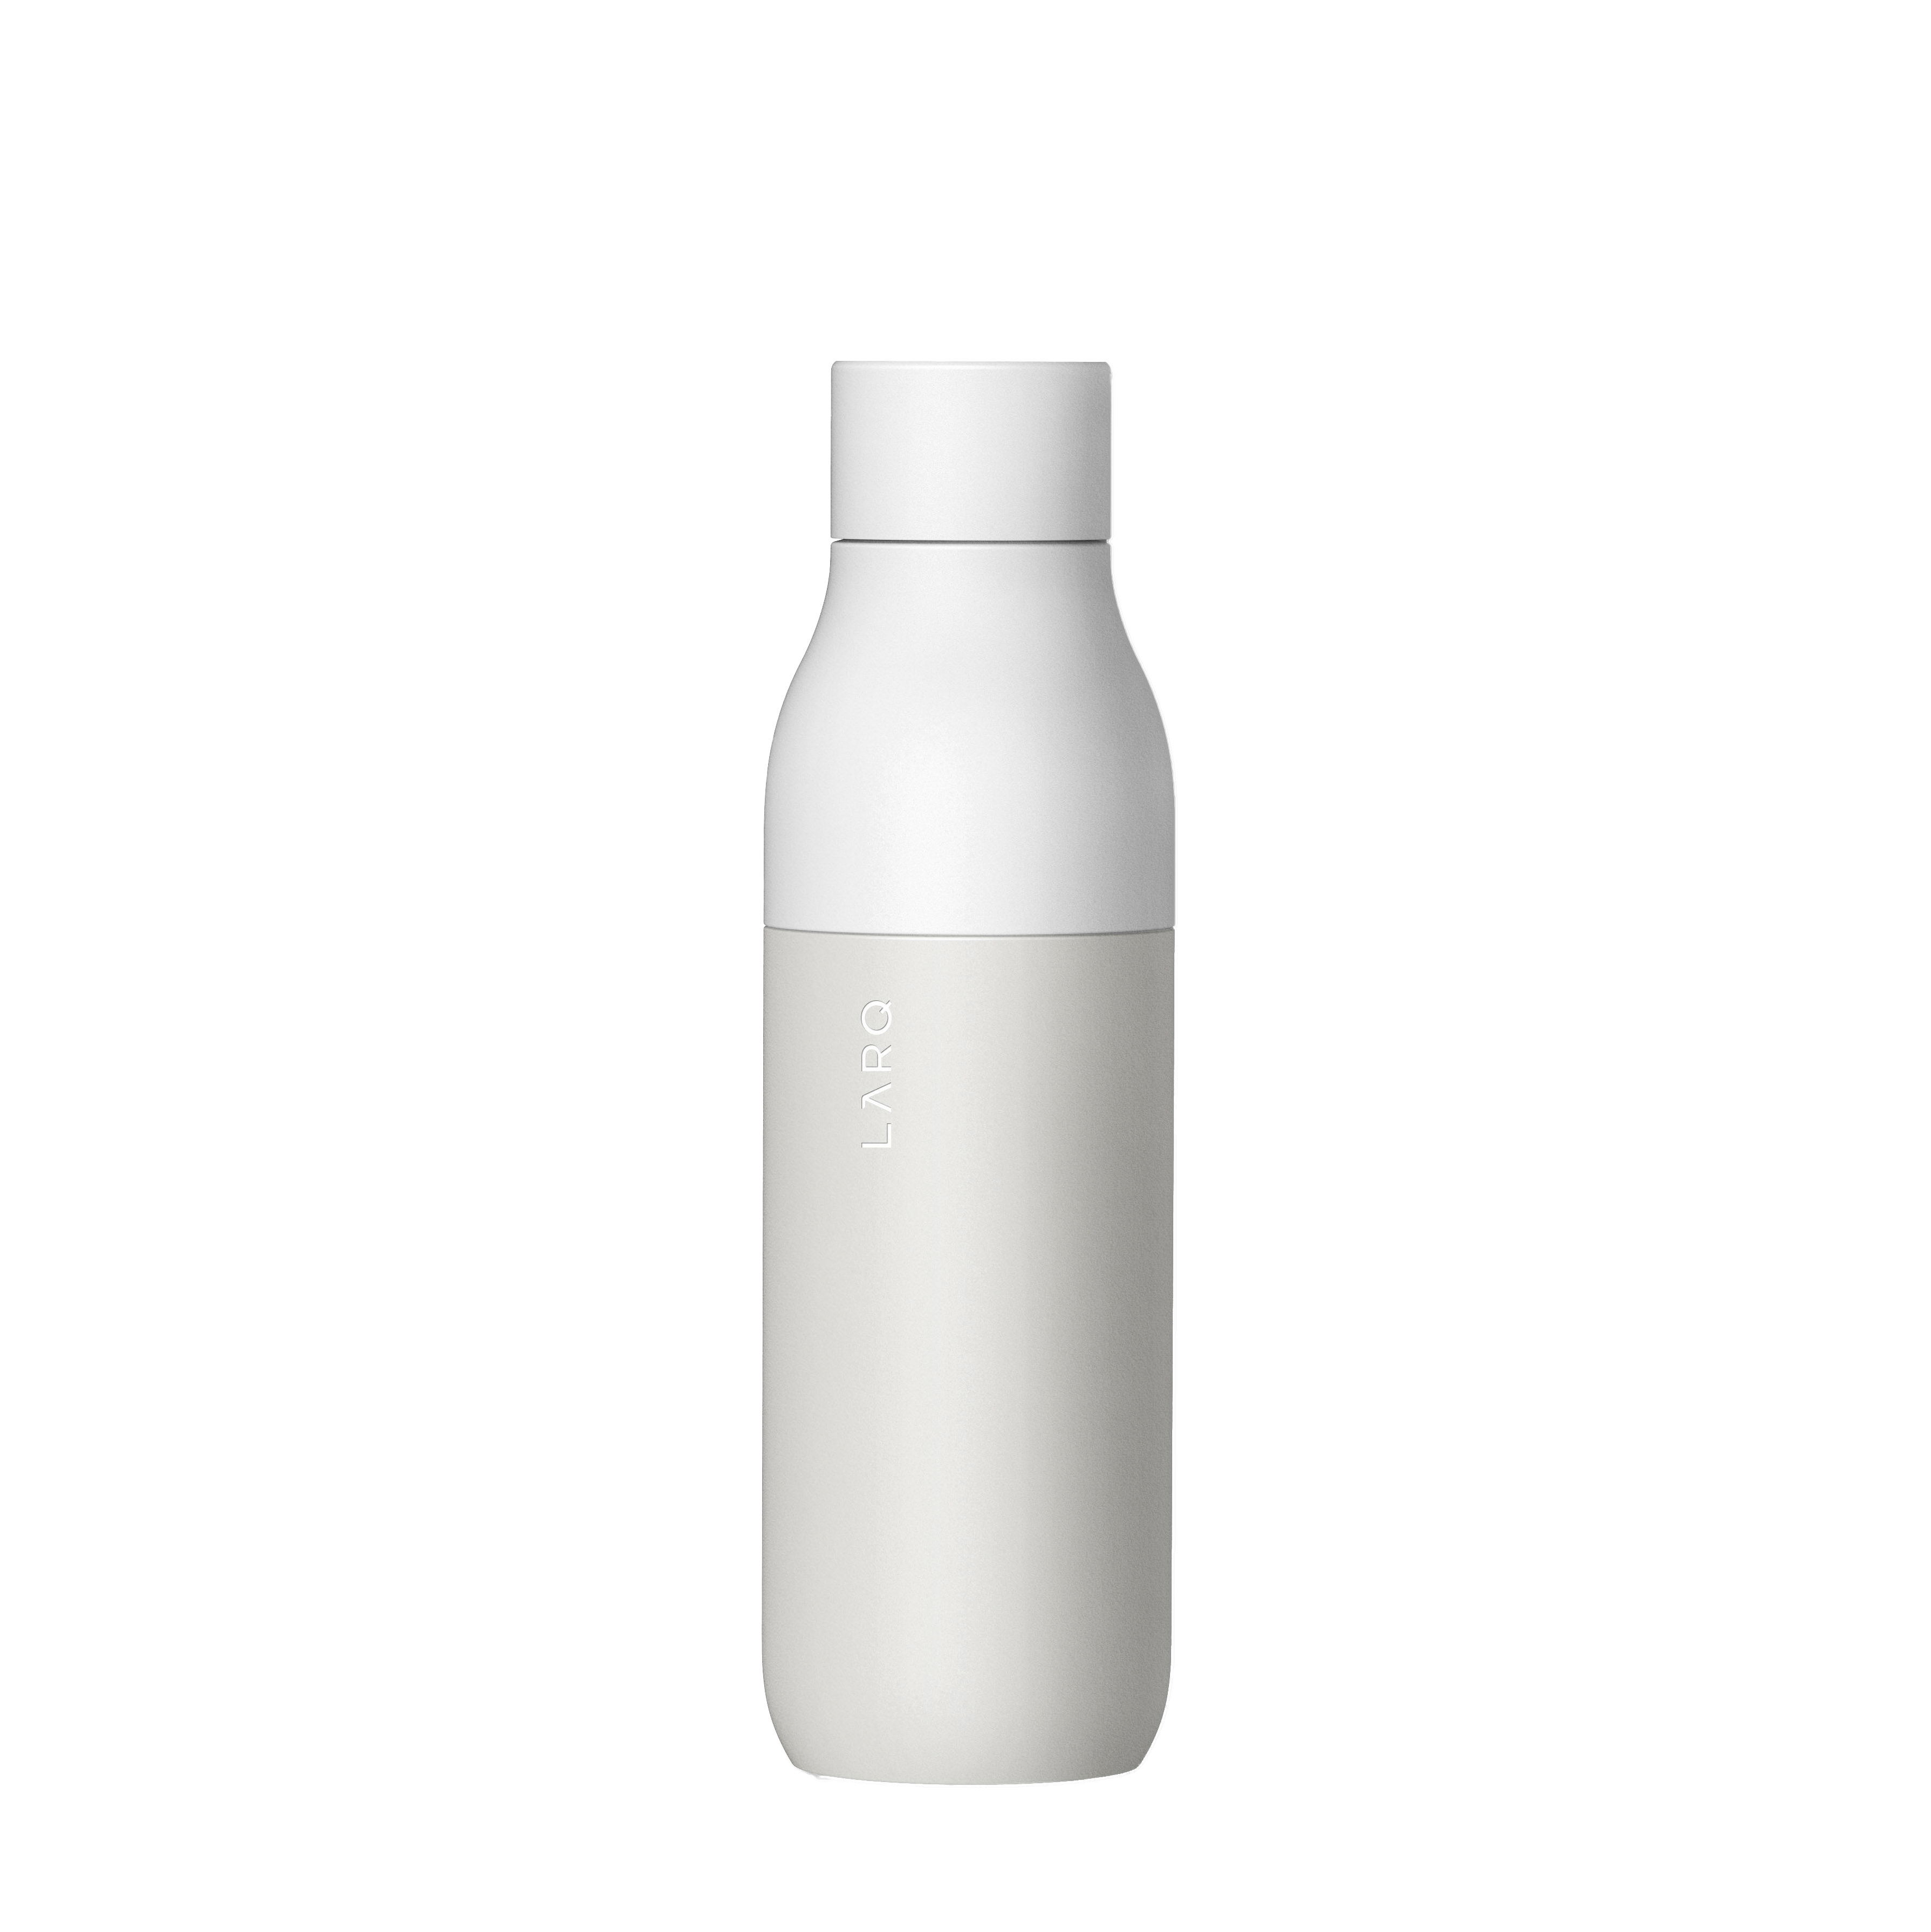 Granite White LARQ self-cleaning bottle 500ml 